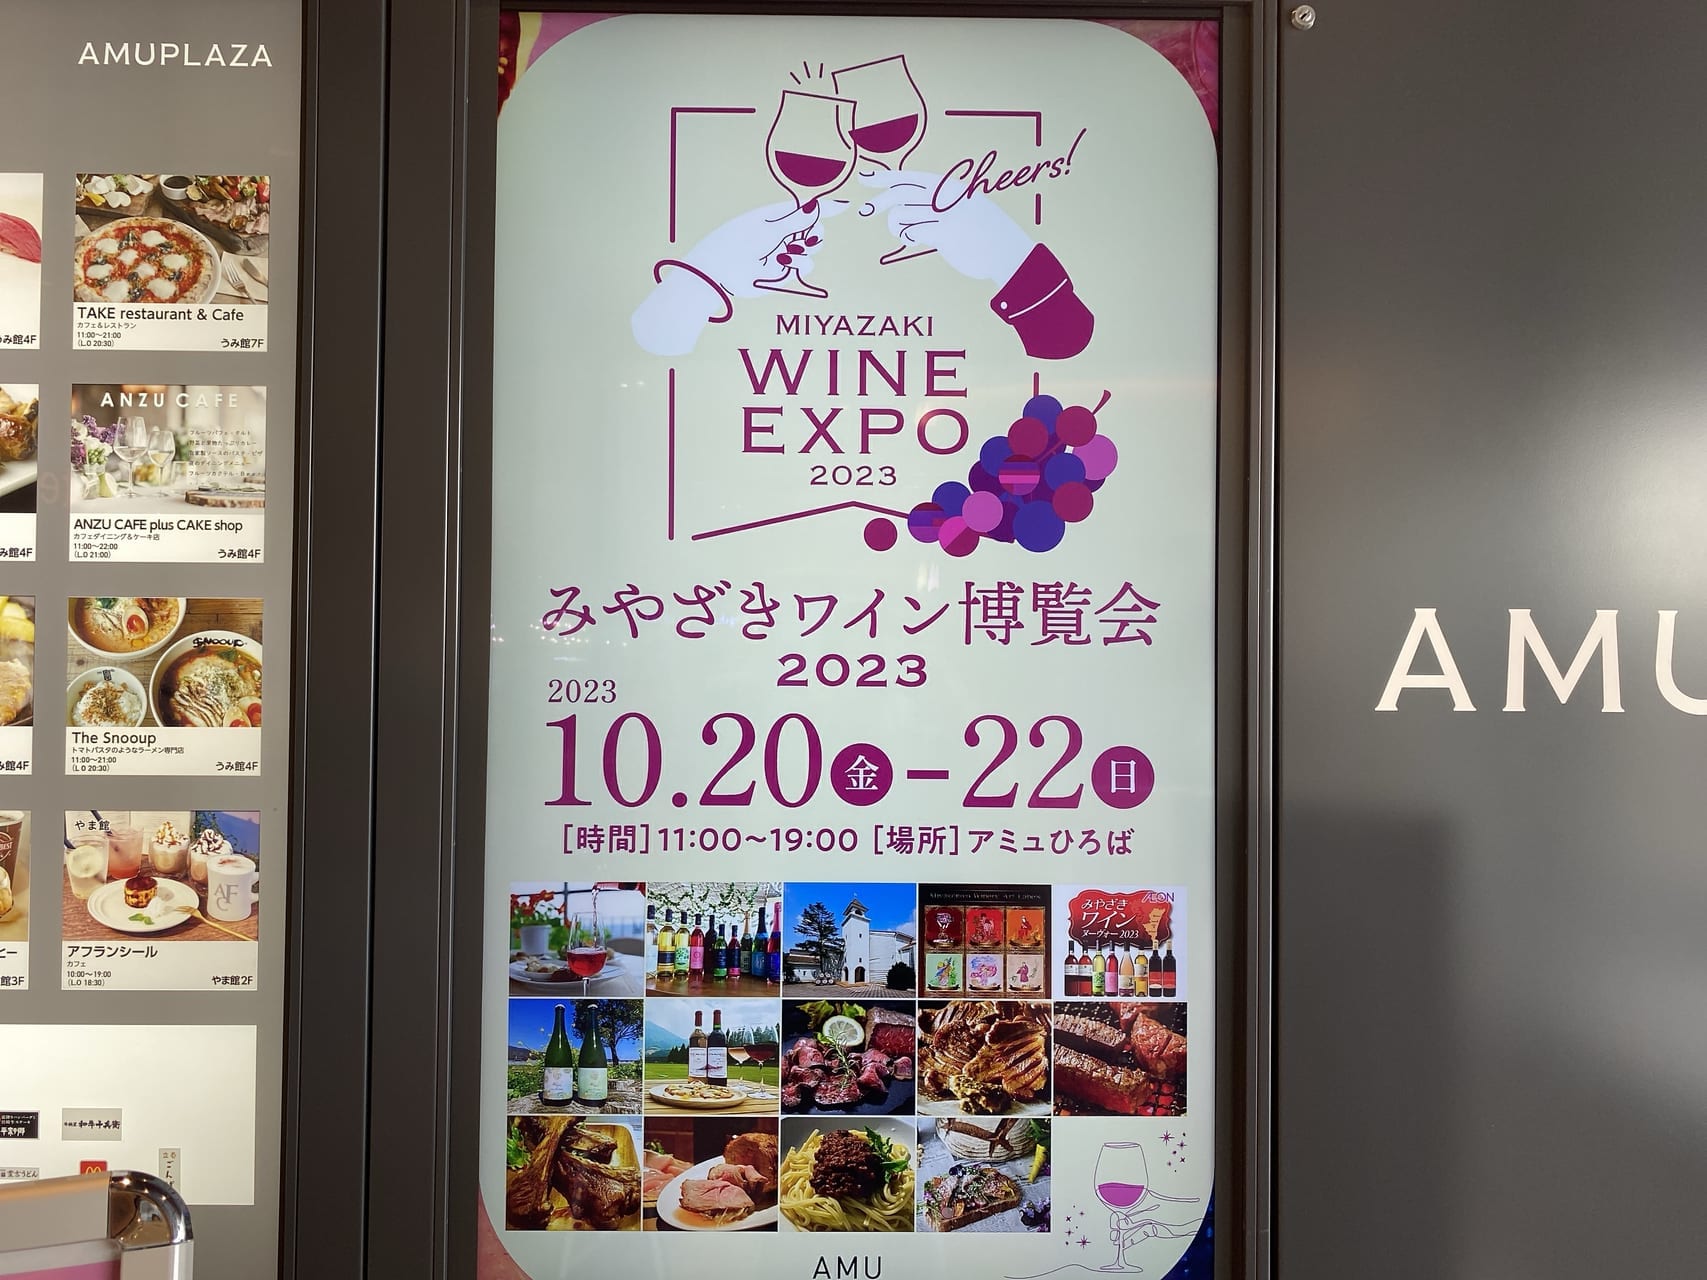 宮崎市 アミュプラザみやざき 期間限定イベント みやざきワイン博覧会2023 画像3